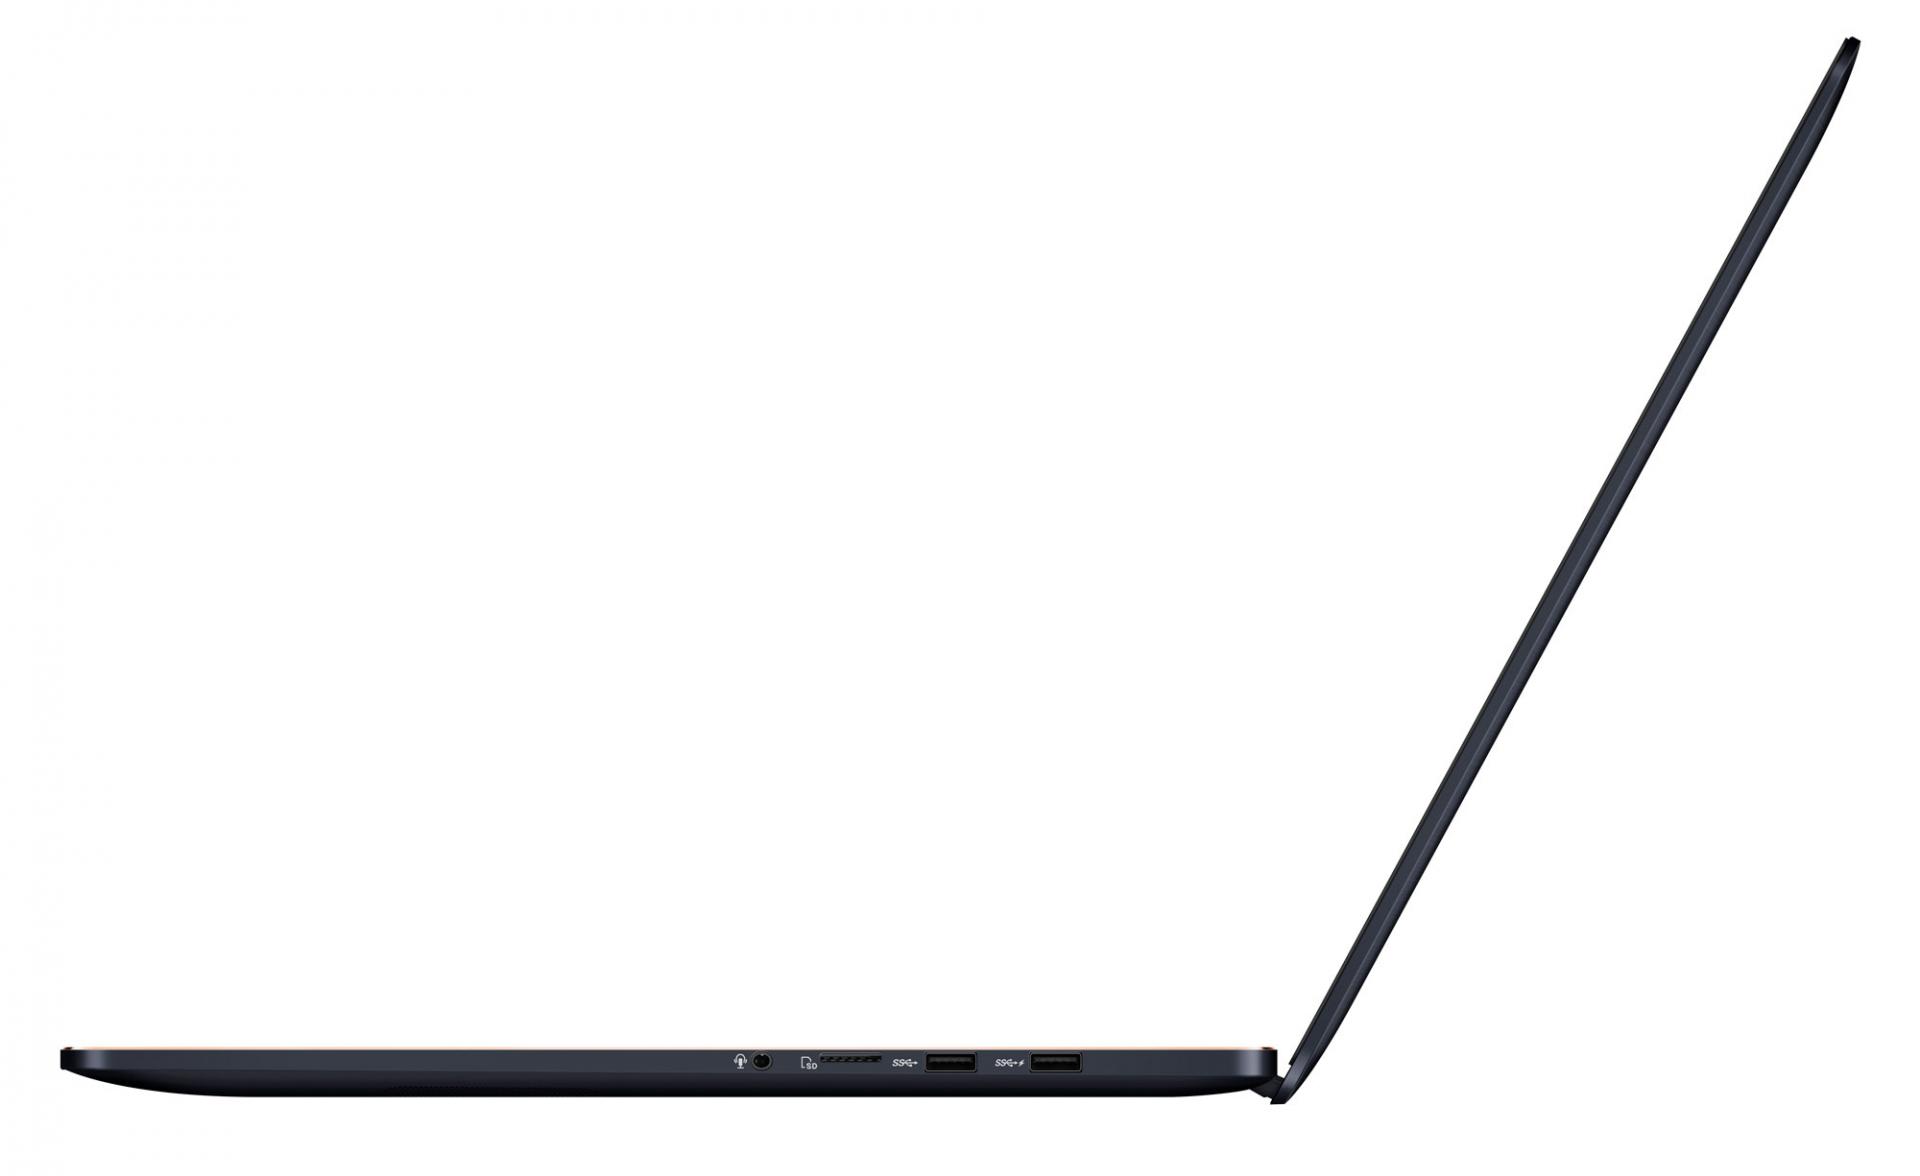 Asus анонсировала мощнейший ультрабук ZenBook Pro 15 